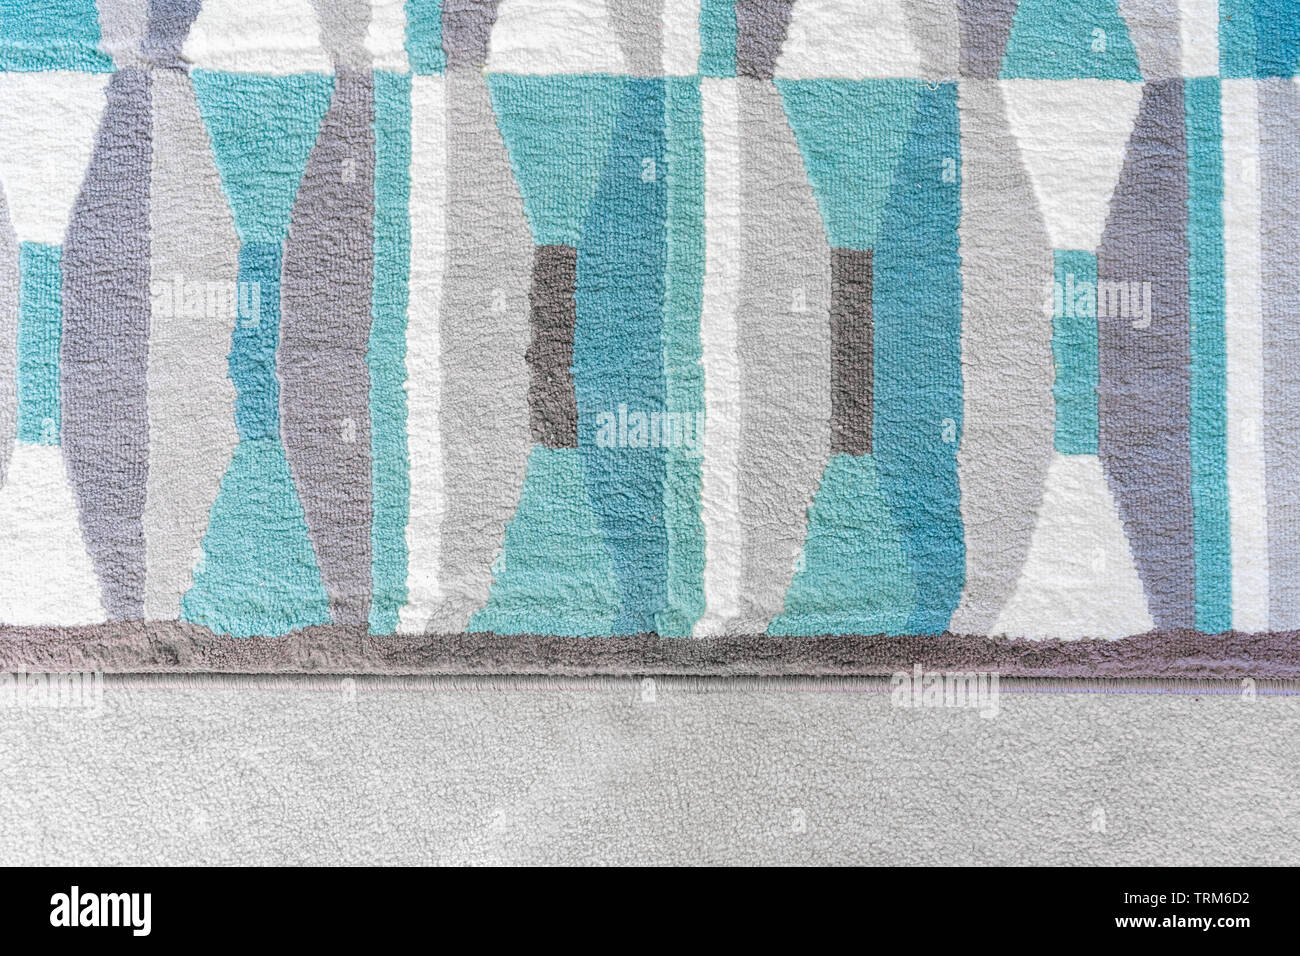 Grafica di sfondo, vista dall'alto di un tappeto geometrico con colori blu e grigio patterns, sulla sommità di un tappeto beige, come un elemento di design in home decor. Foto Stock